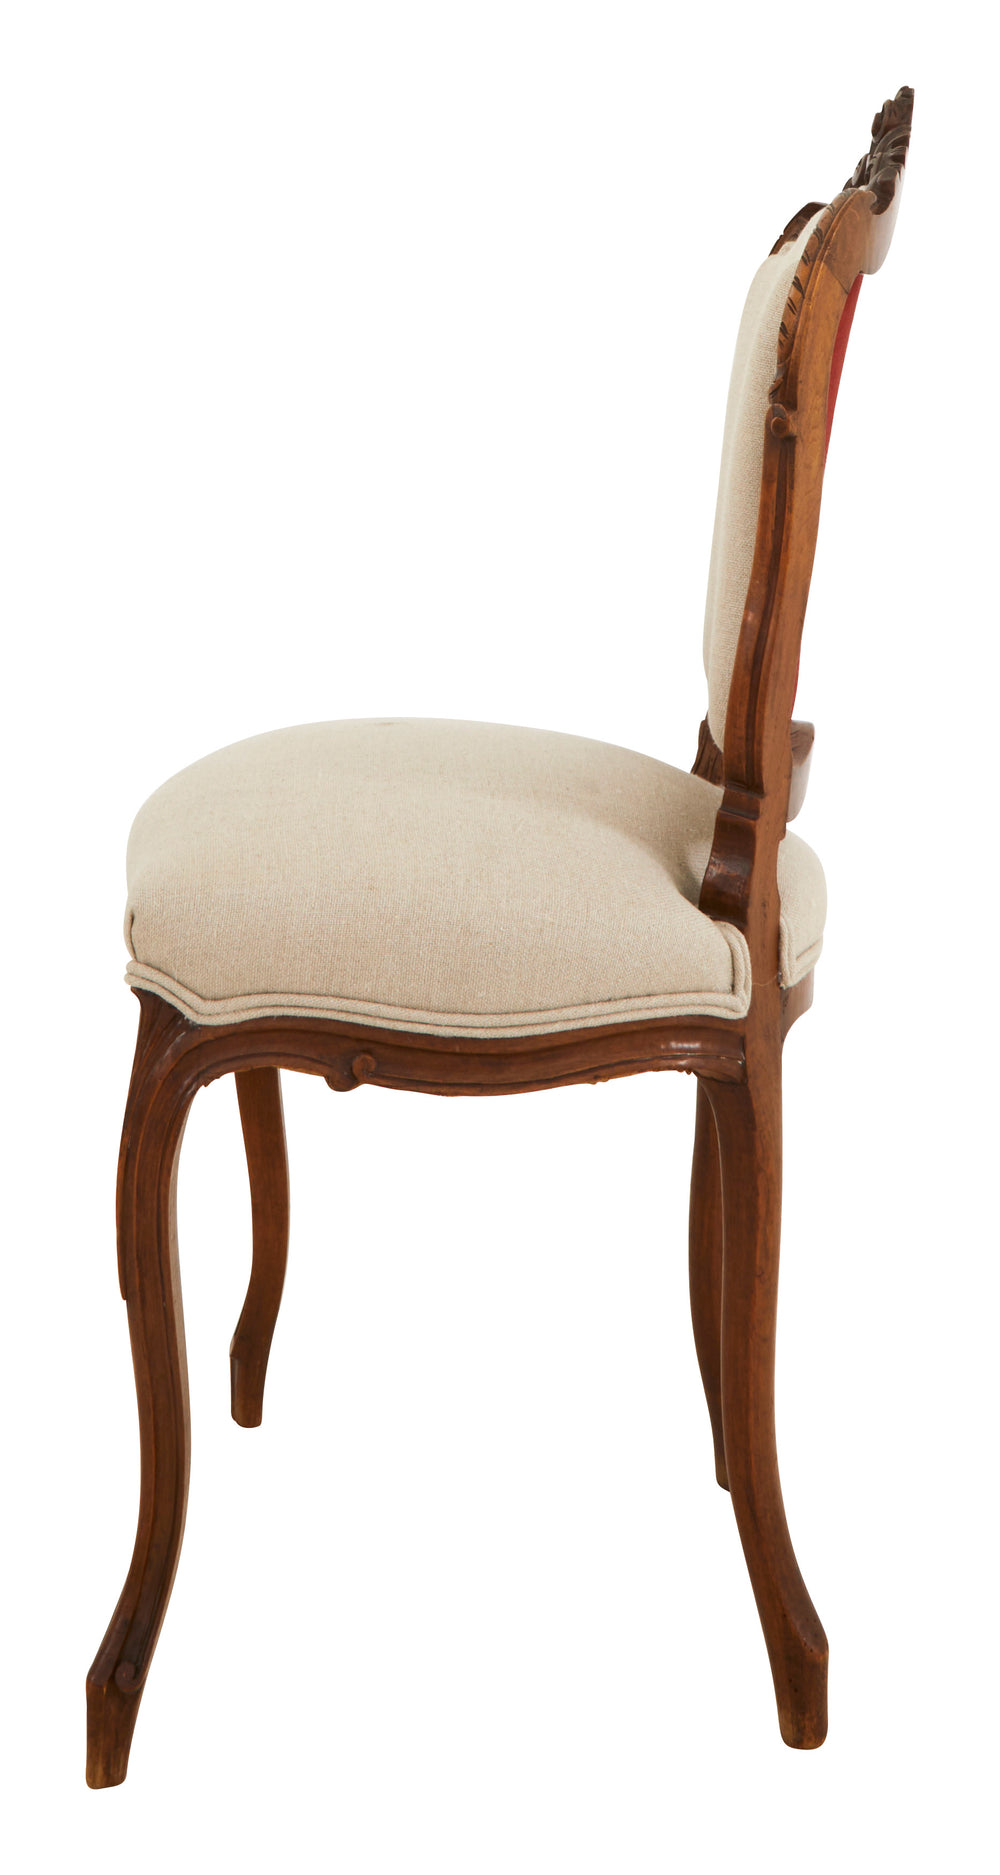 Antique Louis XV Chair